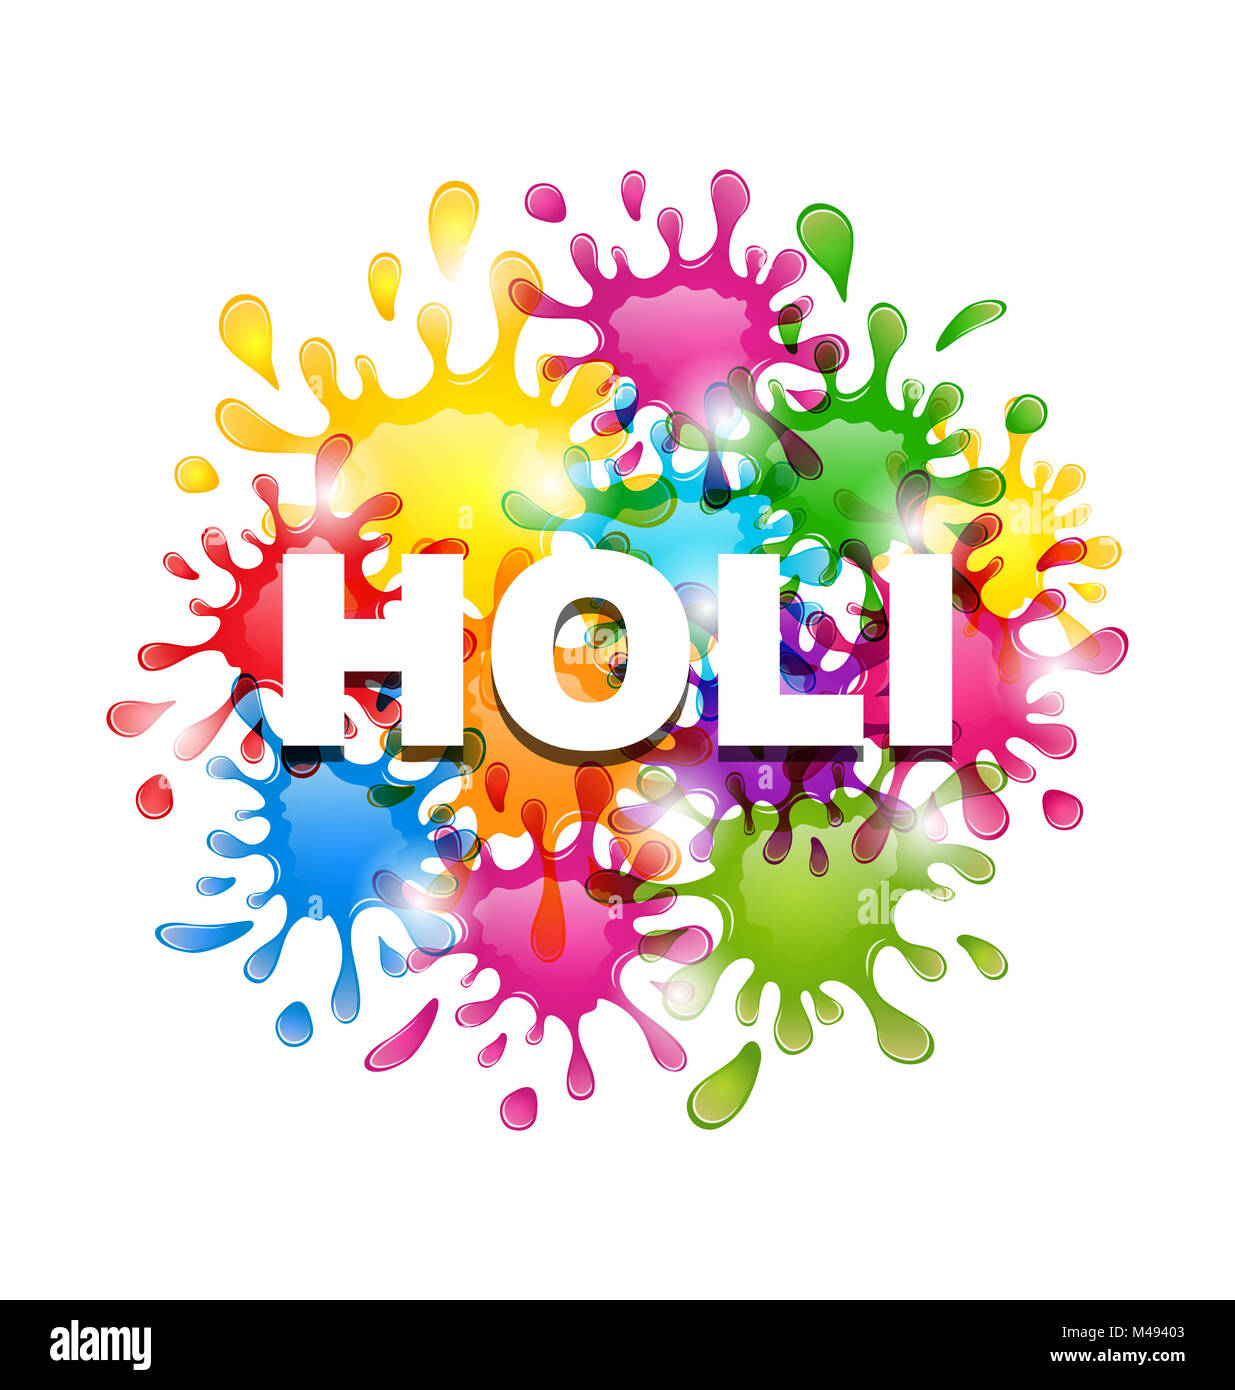 Farbigen Hintergrund mit Flecken für indische Festival Holi Karnevalsfest Stockfoto